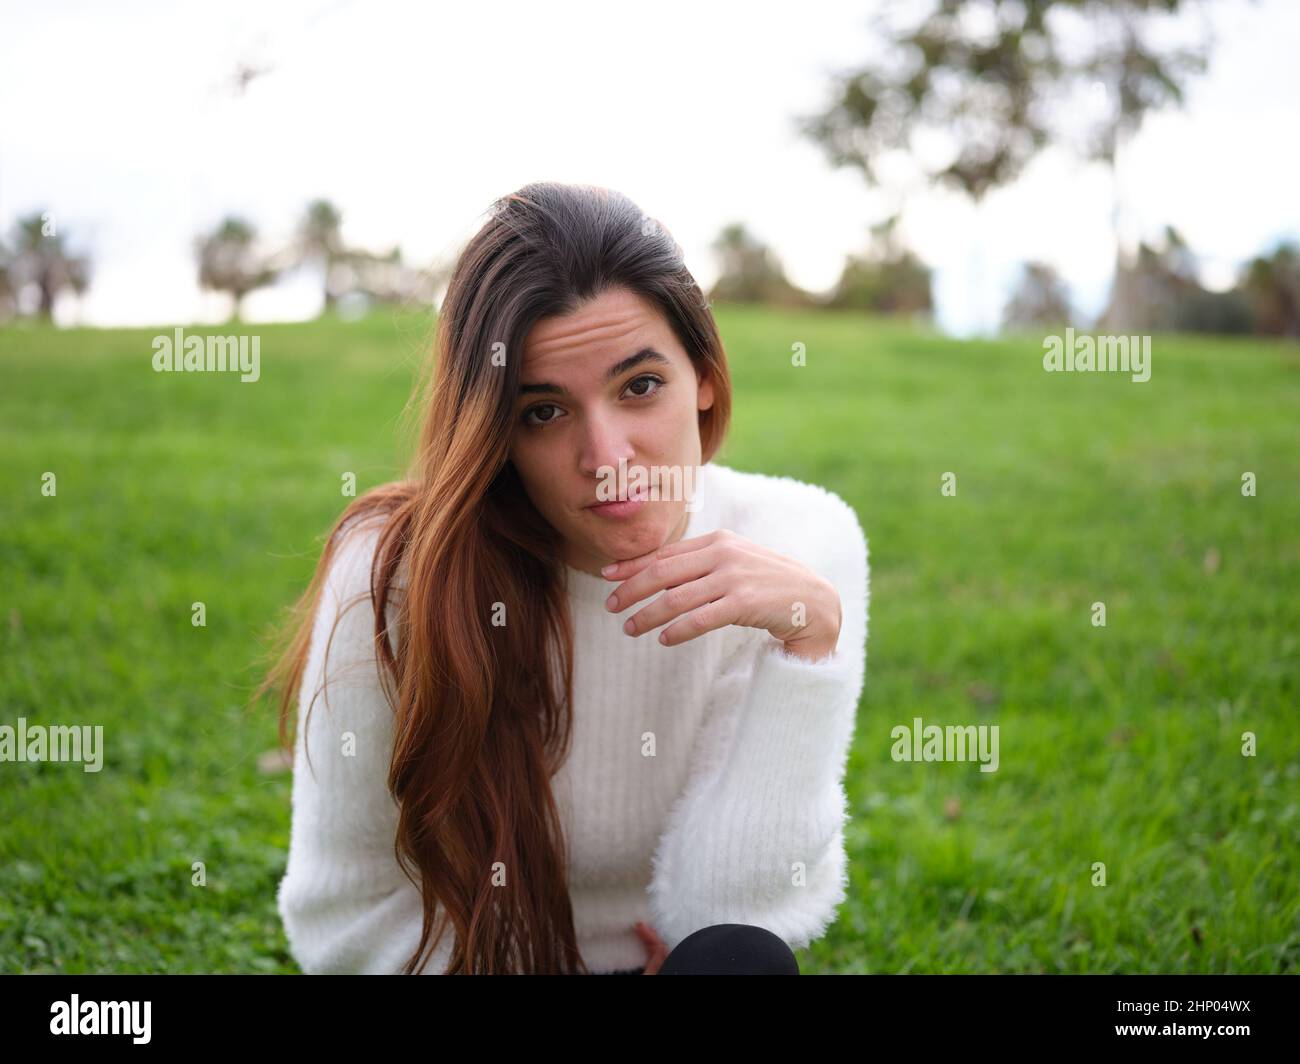 Eine junge Frau im Park, die die Kamera anschaut, fühlt sich vermisst. Stockfoto